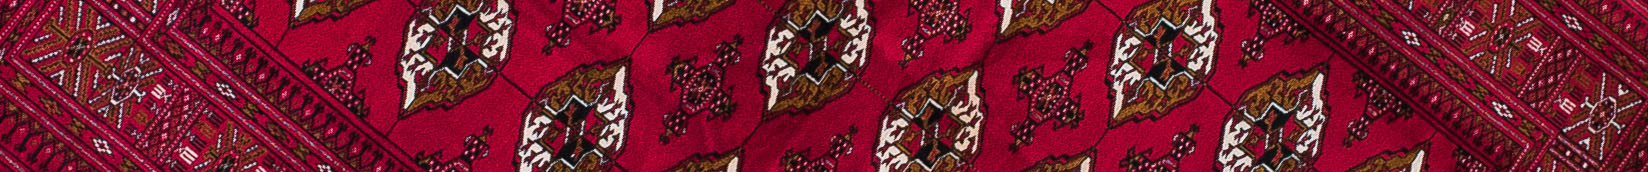 Torkman Persian Carpet Rug N1Carpet Canada Montreal Tapis Persan 1150